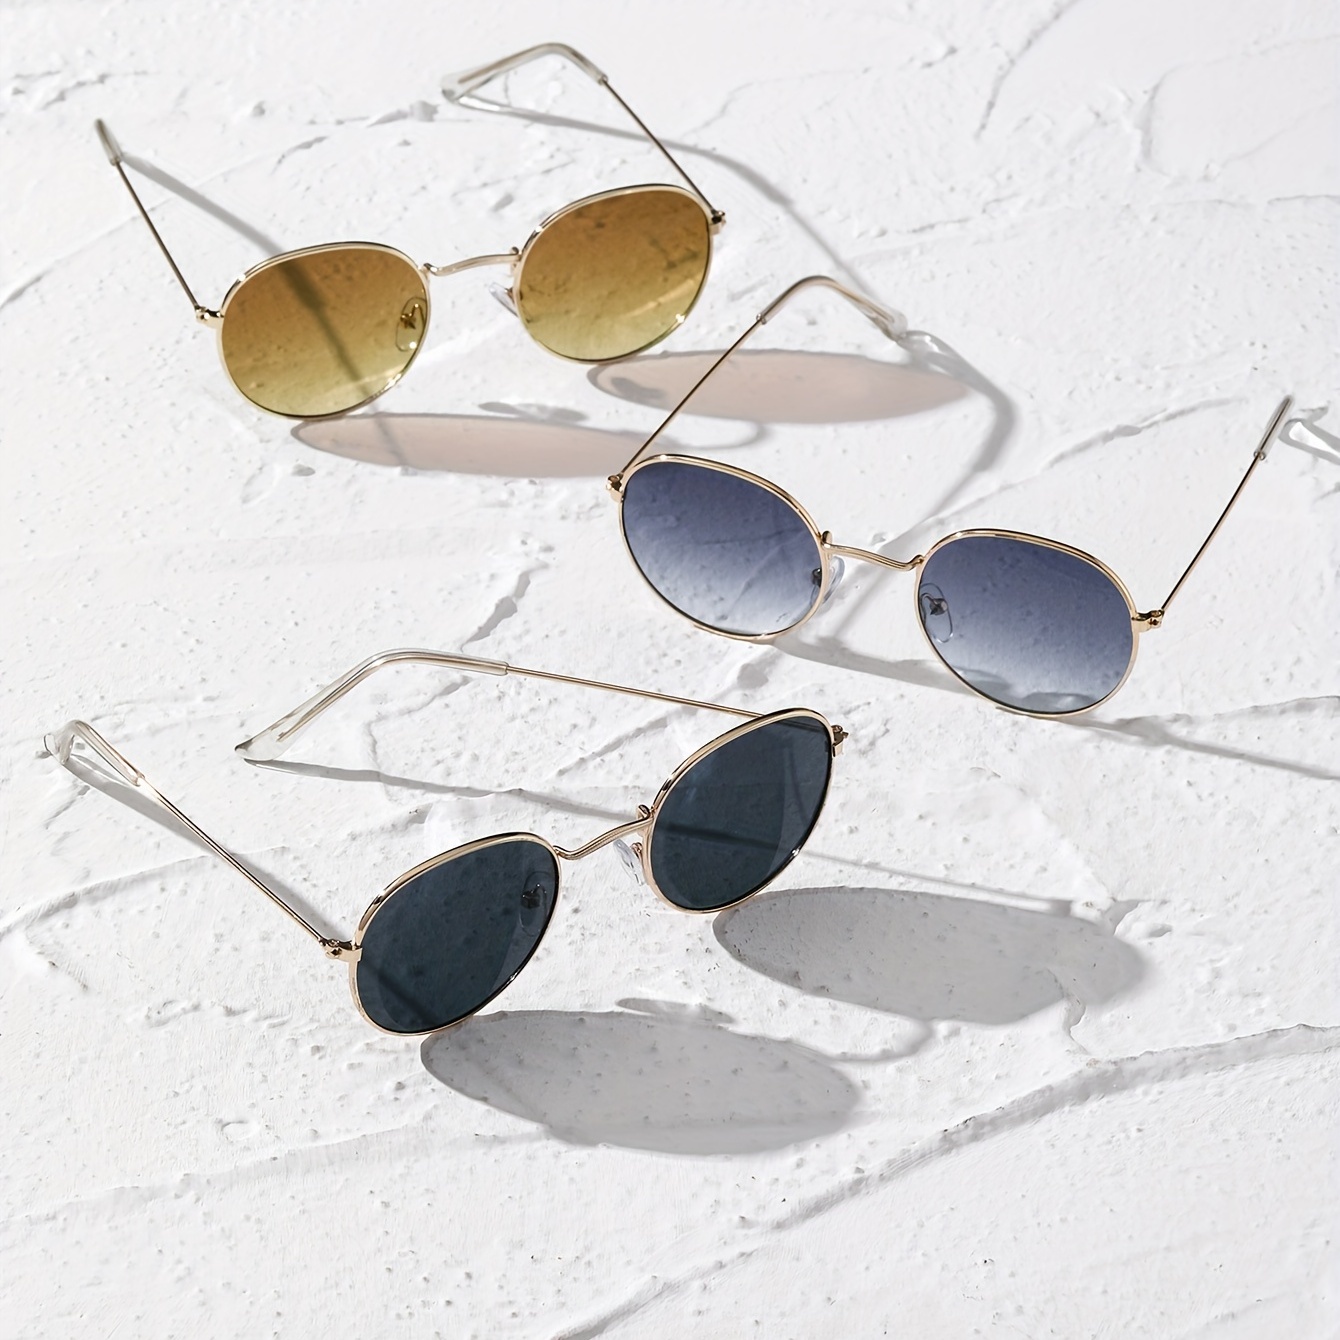 3 Anteojos De Sol Casuales, Juego gafas de sol, lentes de sol colores  variados Para Hombre, lentes de estilo casual, ideal para ir a la playa, la  pisc